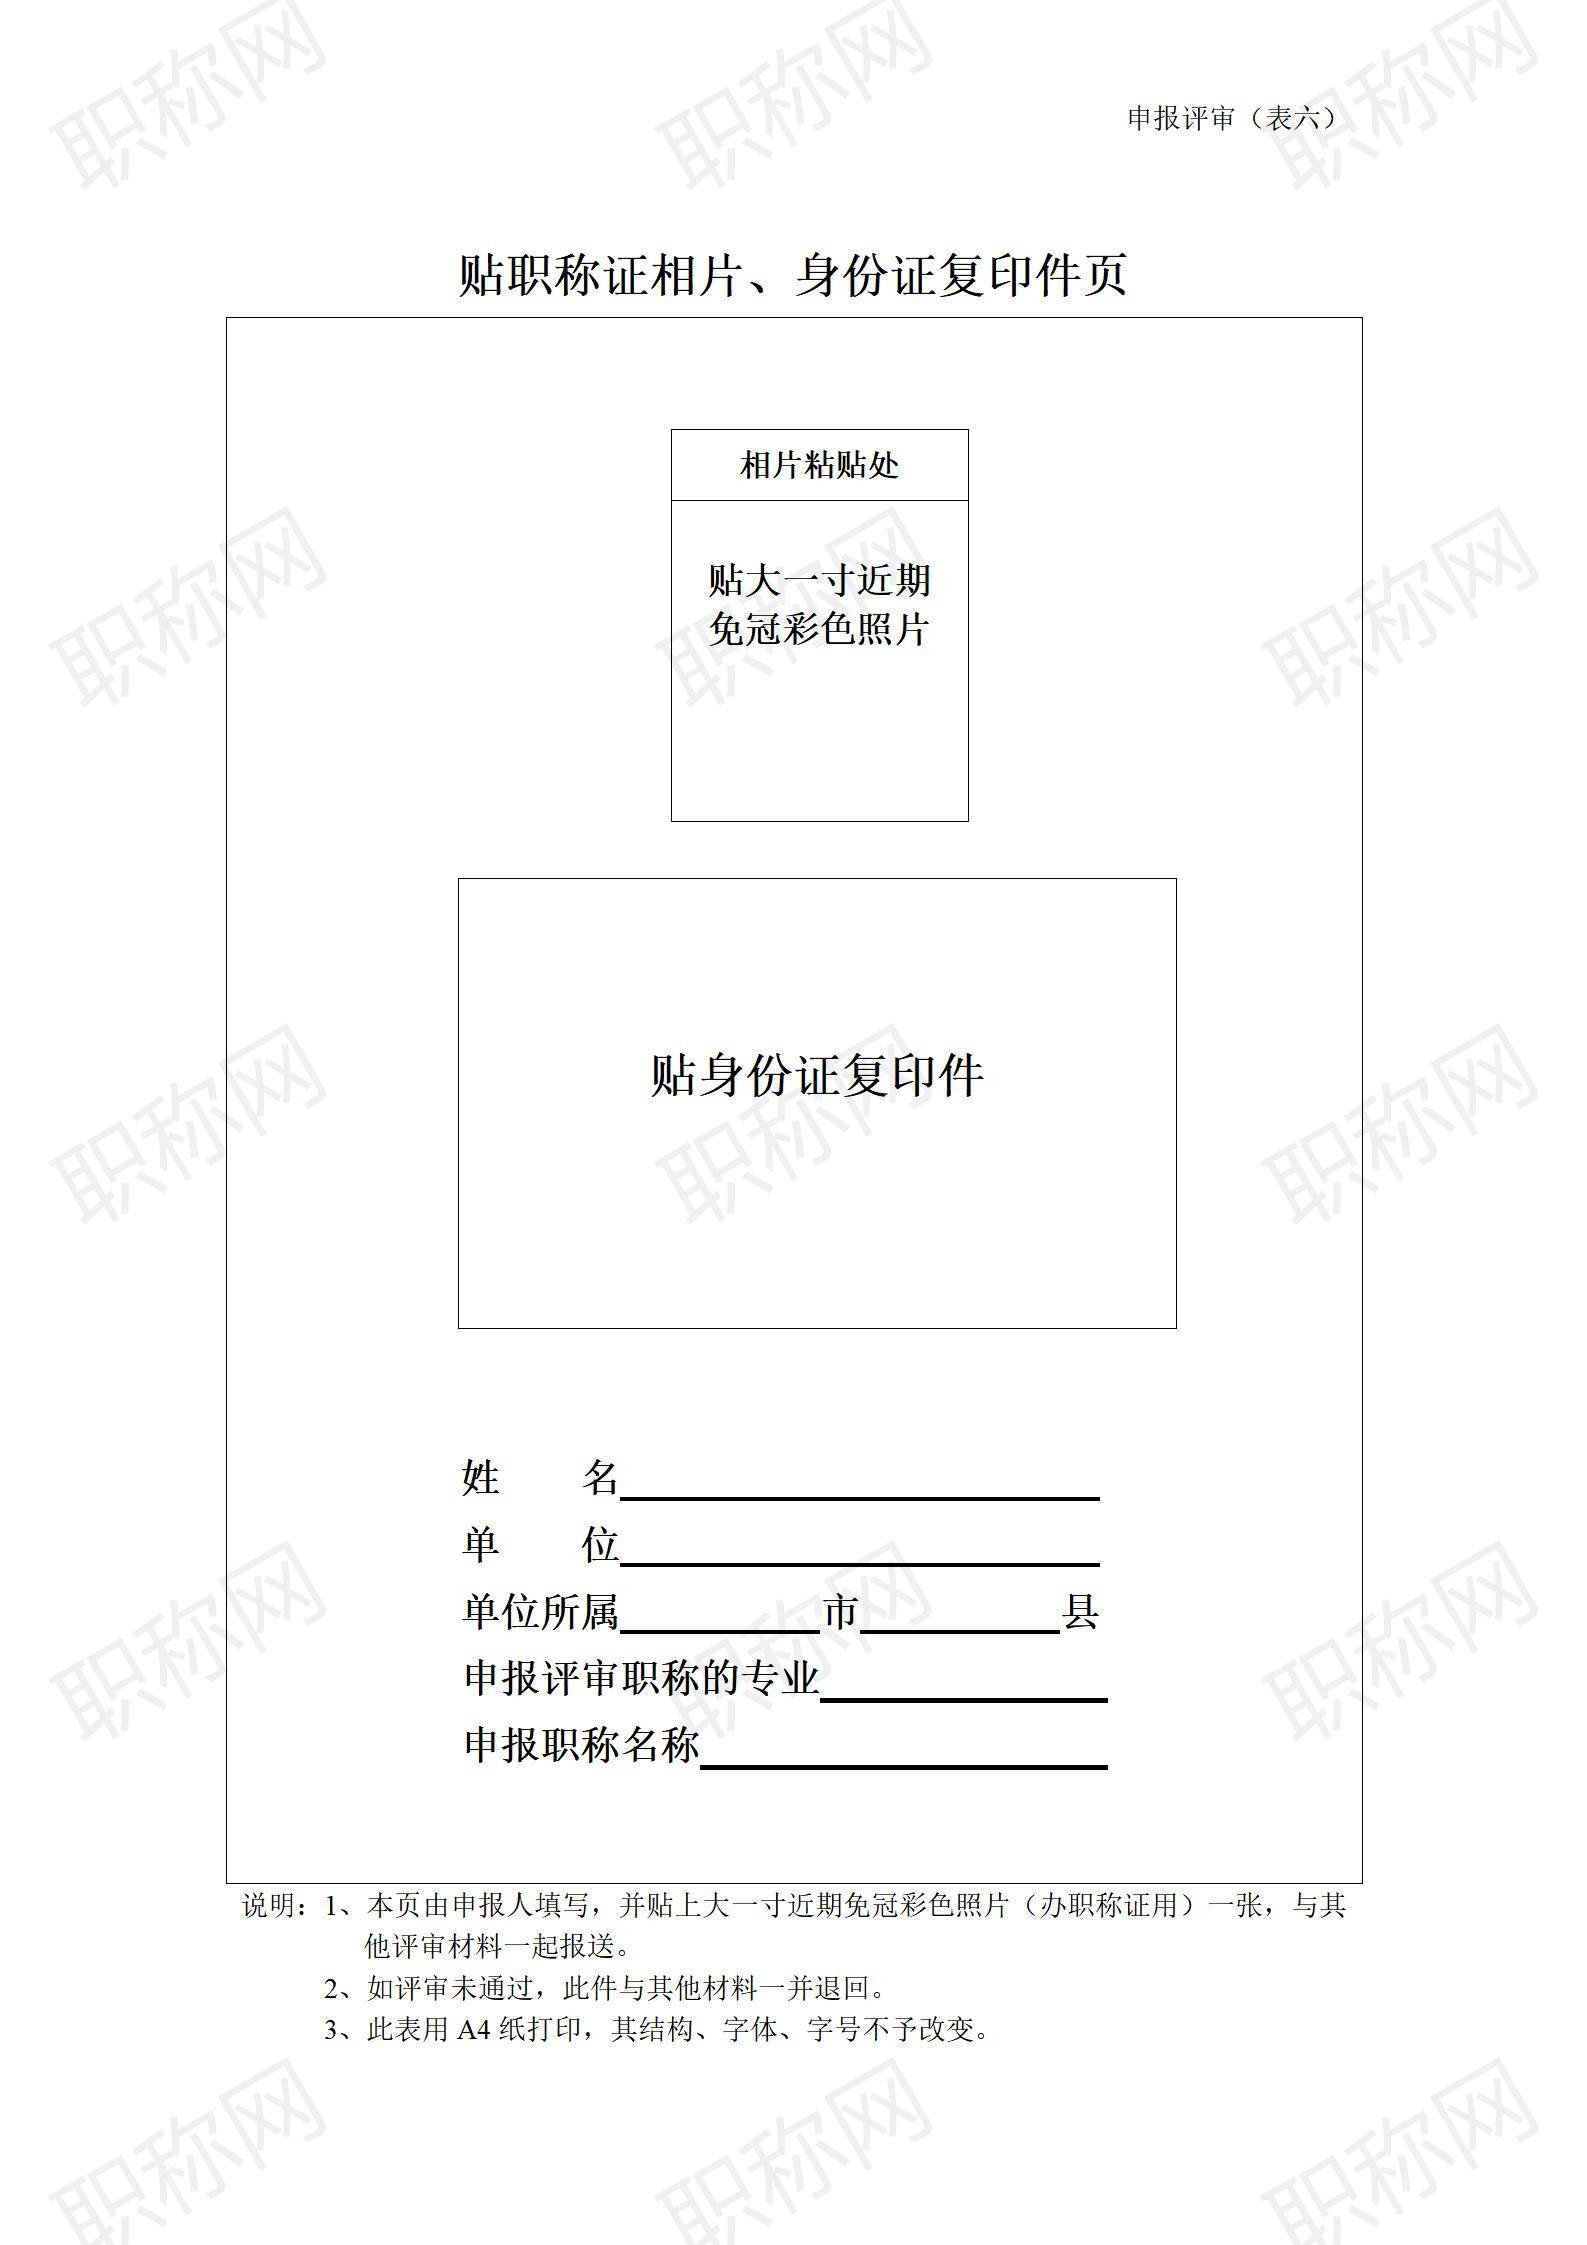 广东省职称评审相片及身份证复印件页_01.jpg